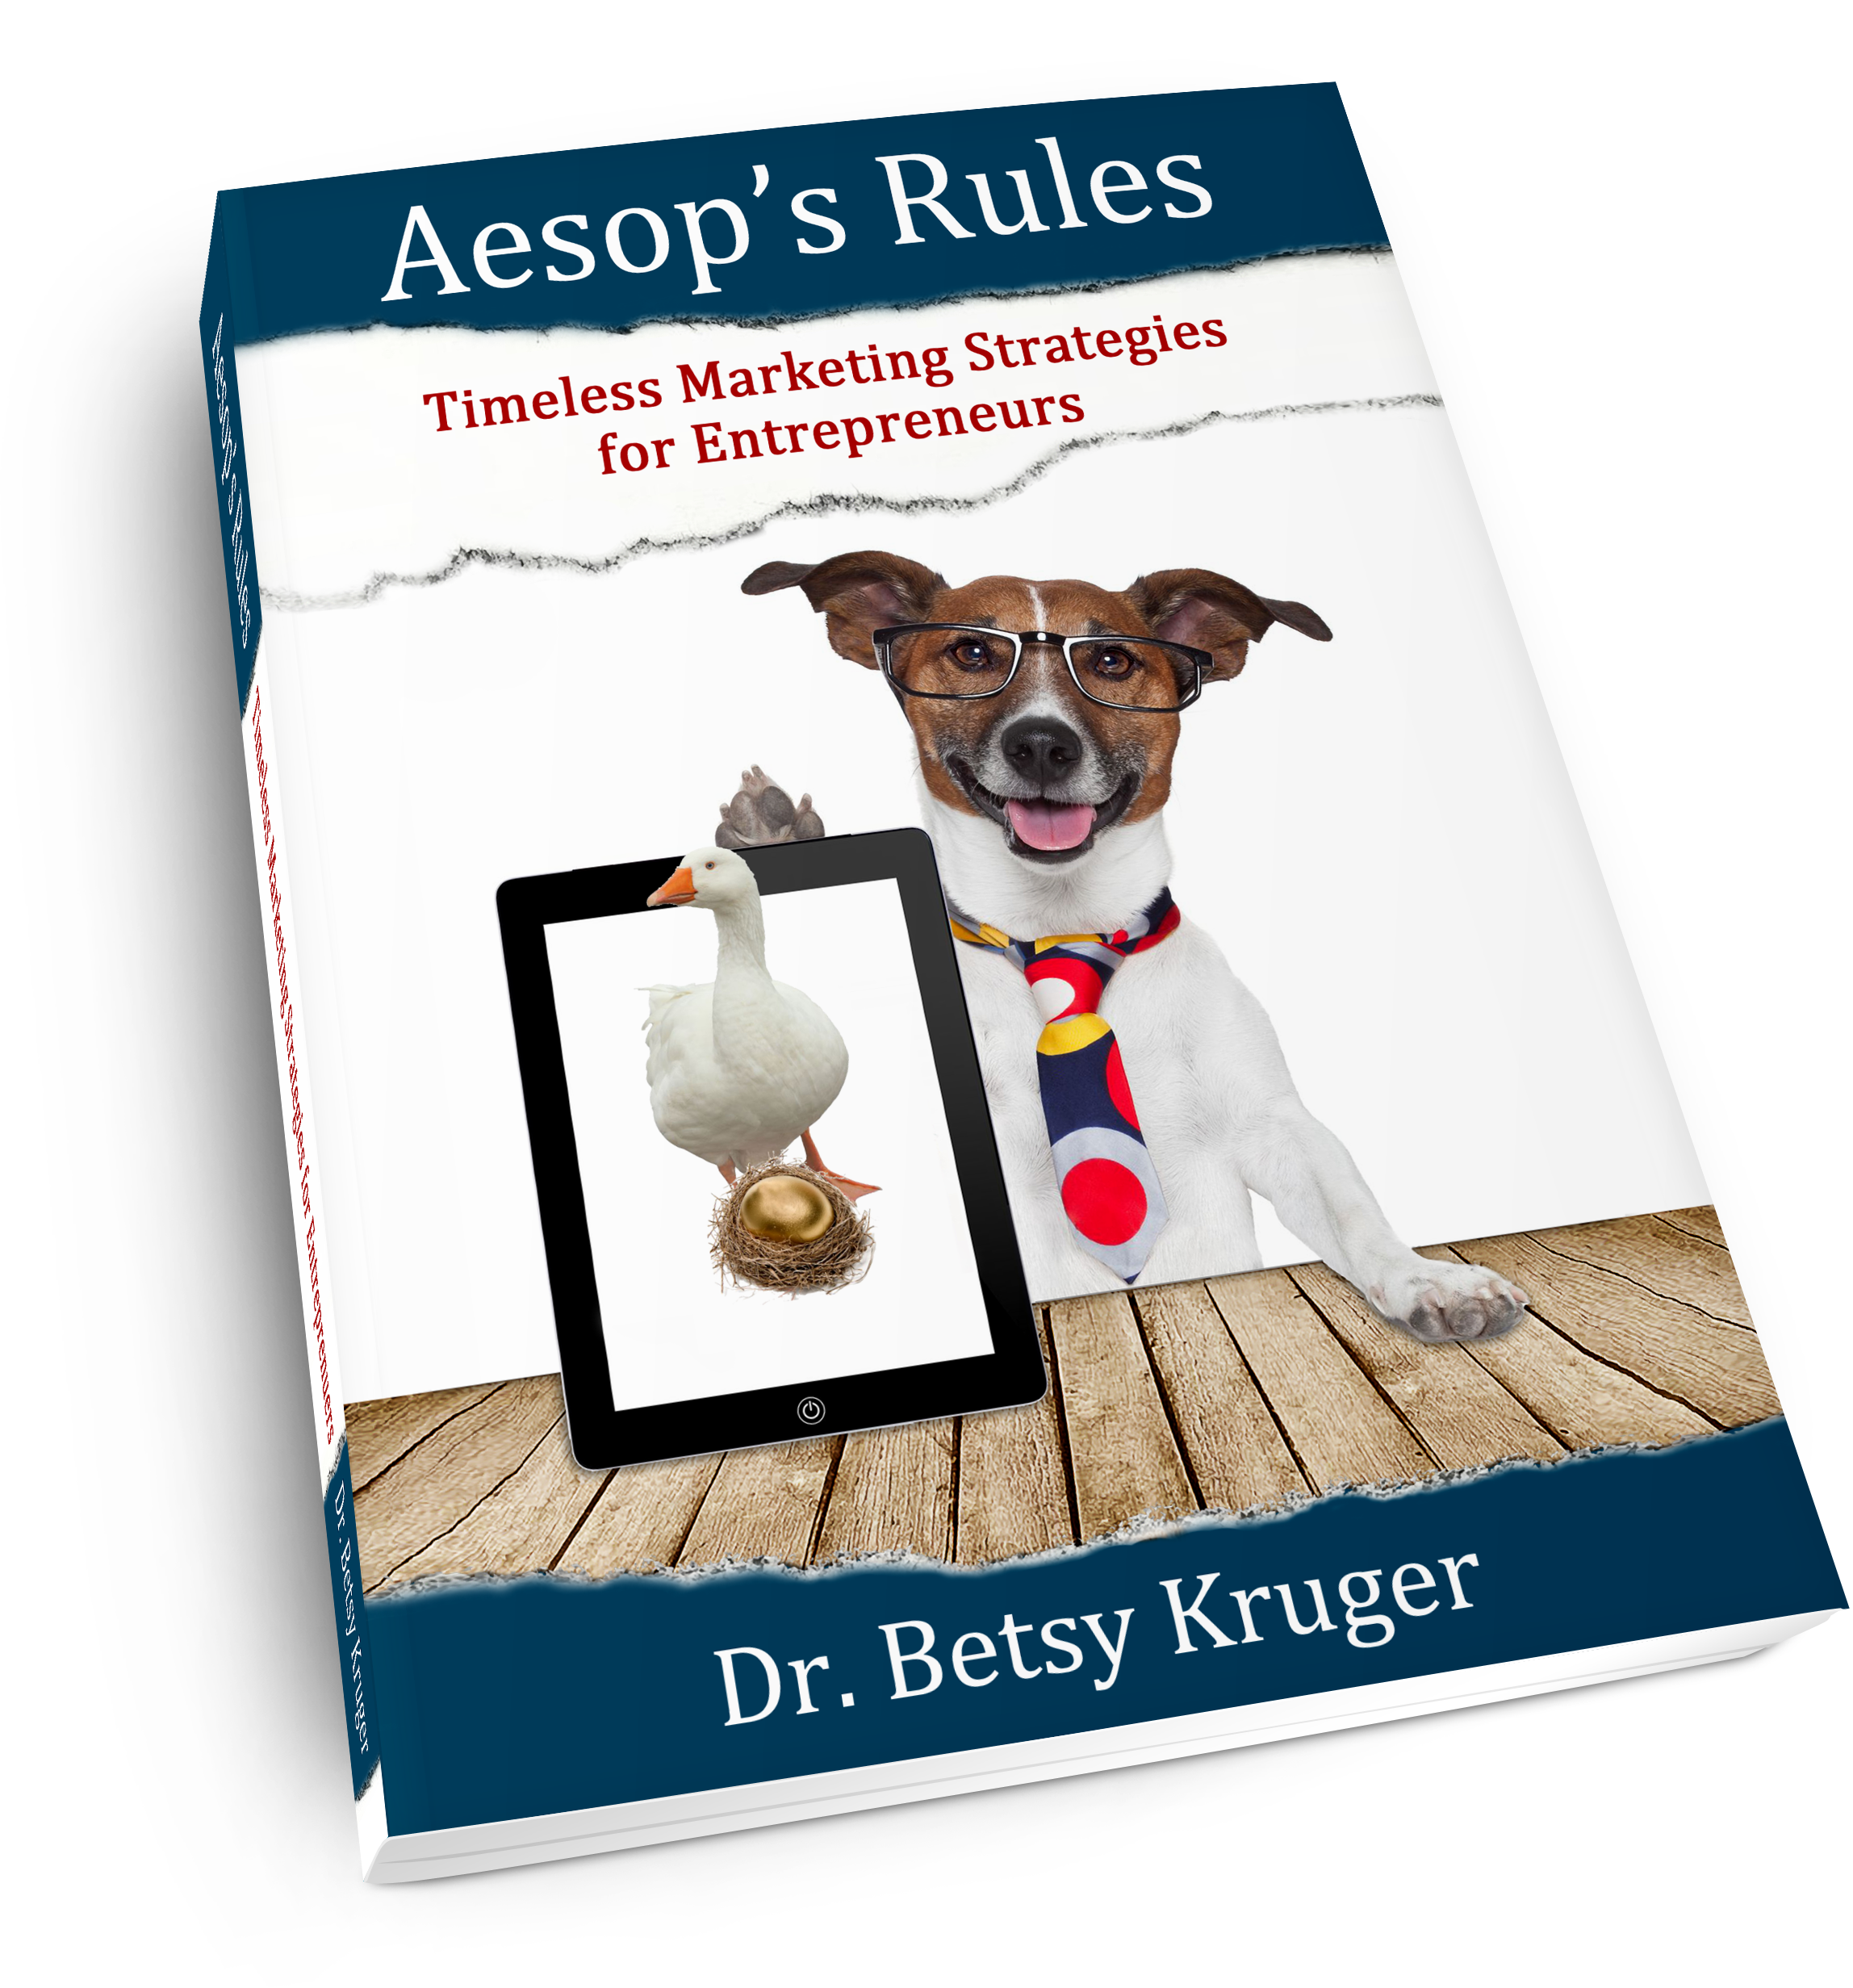 Aesop's Rules: Timeless Marketing Strategies for Entrepreneurs